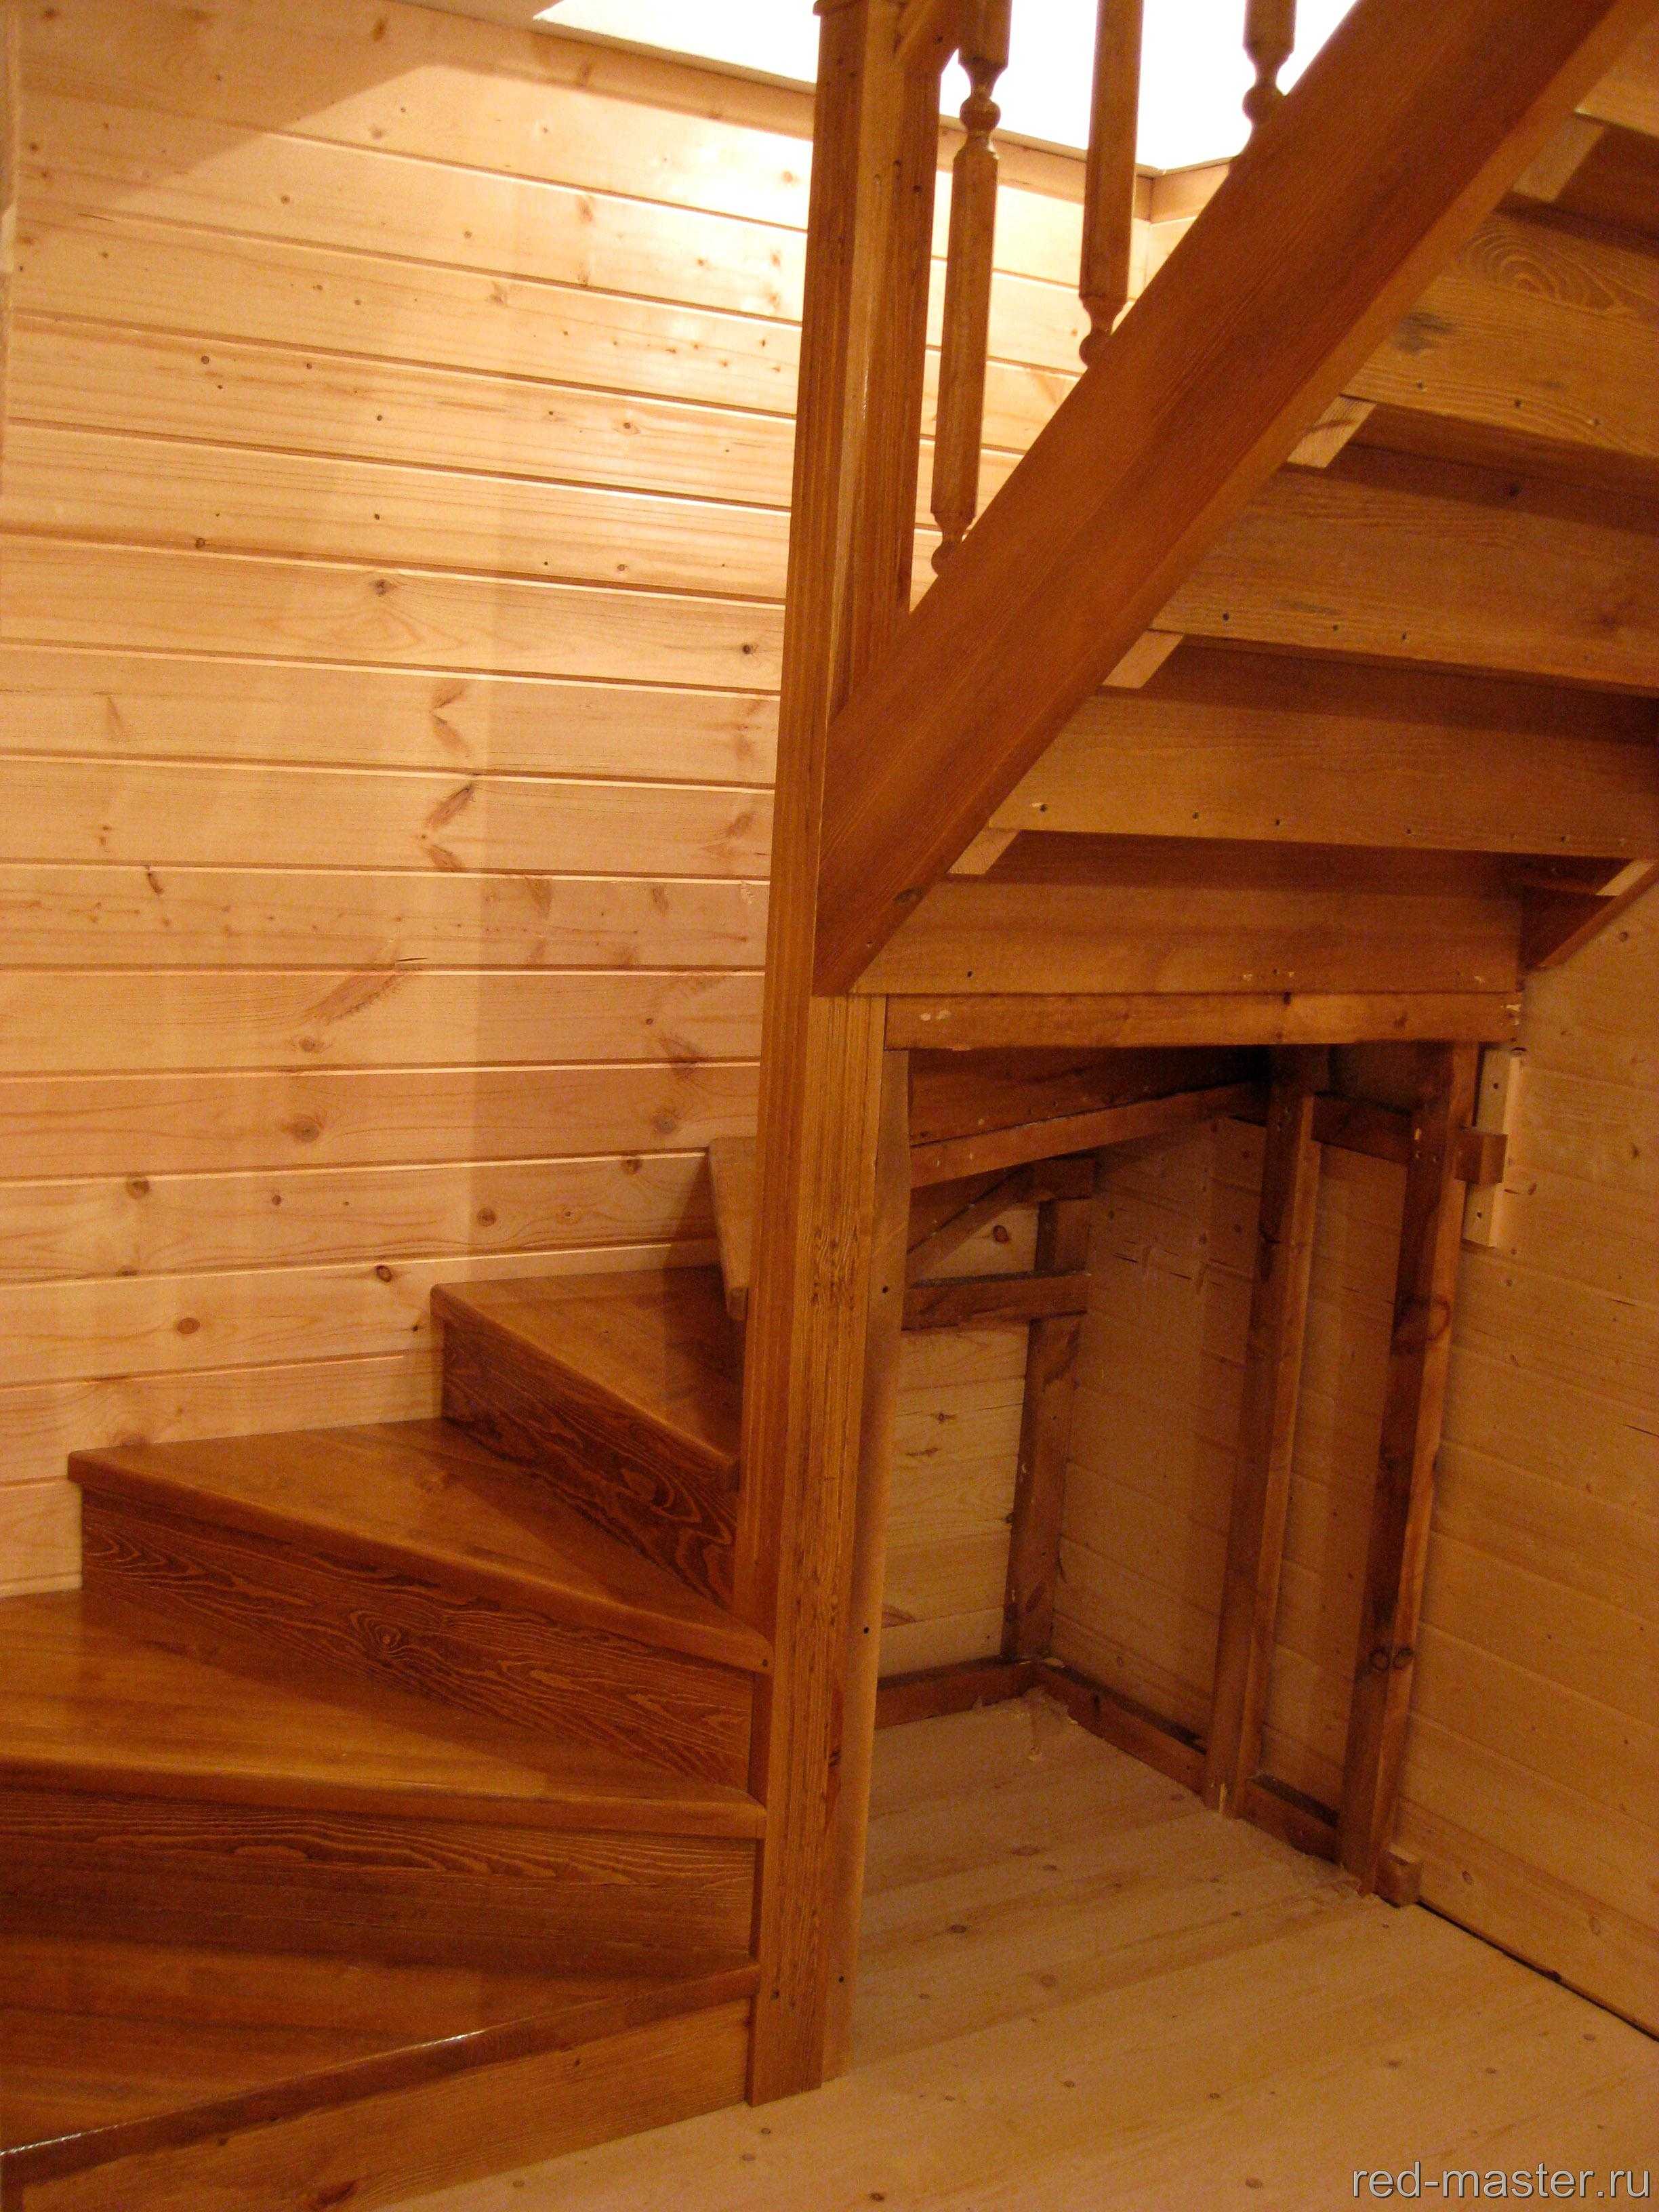  сделать деревянную лестницу на второй этаж своими руками в частном доме